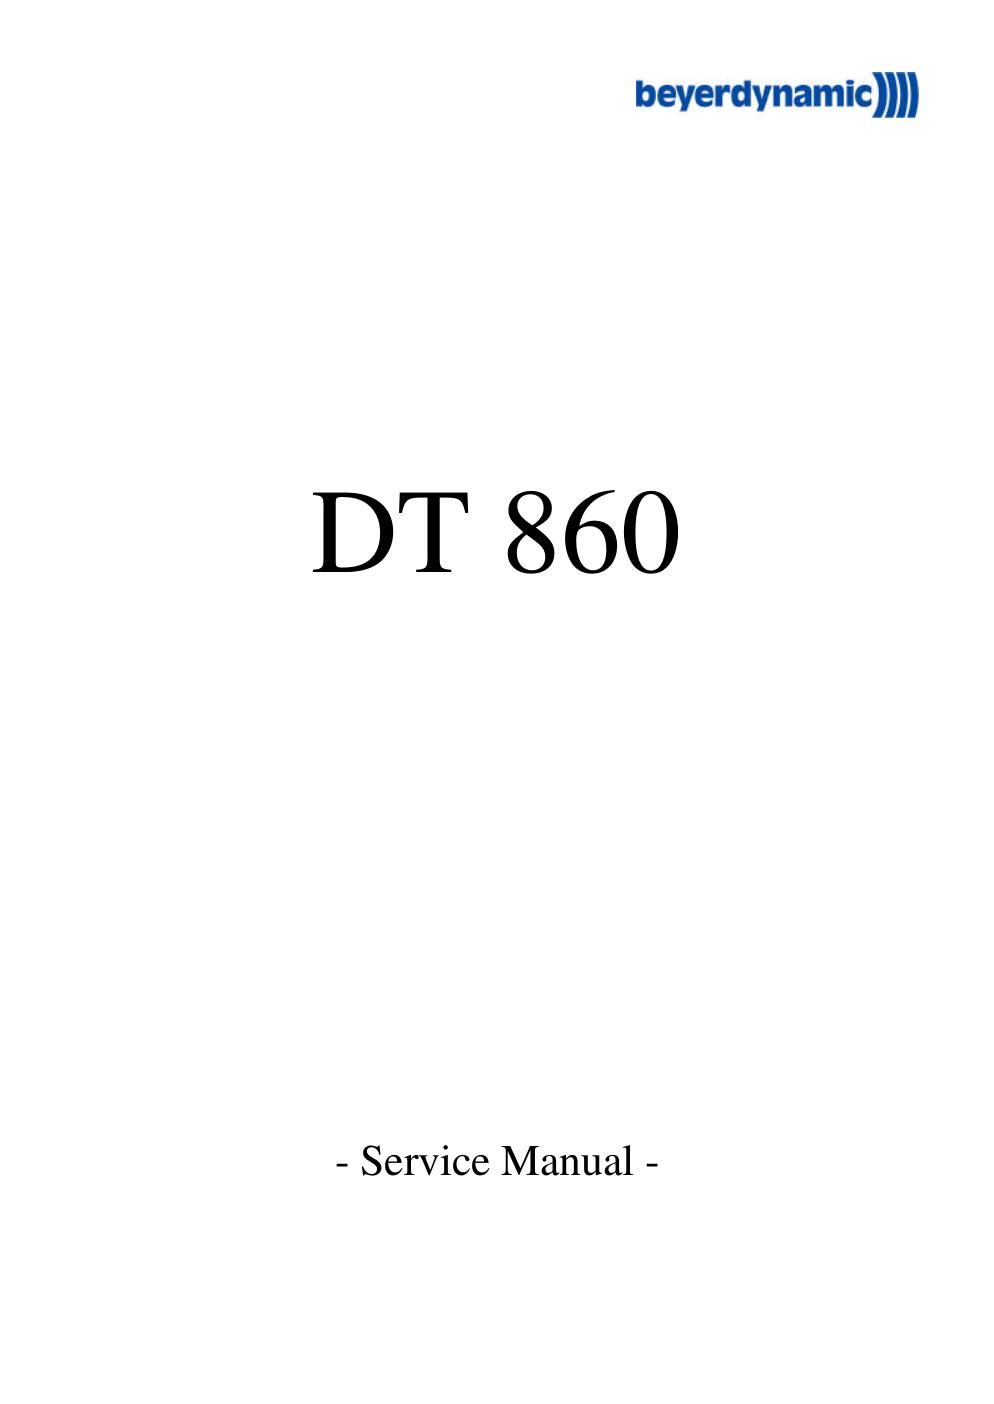 beyerdynamic dt 860 service manual